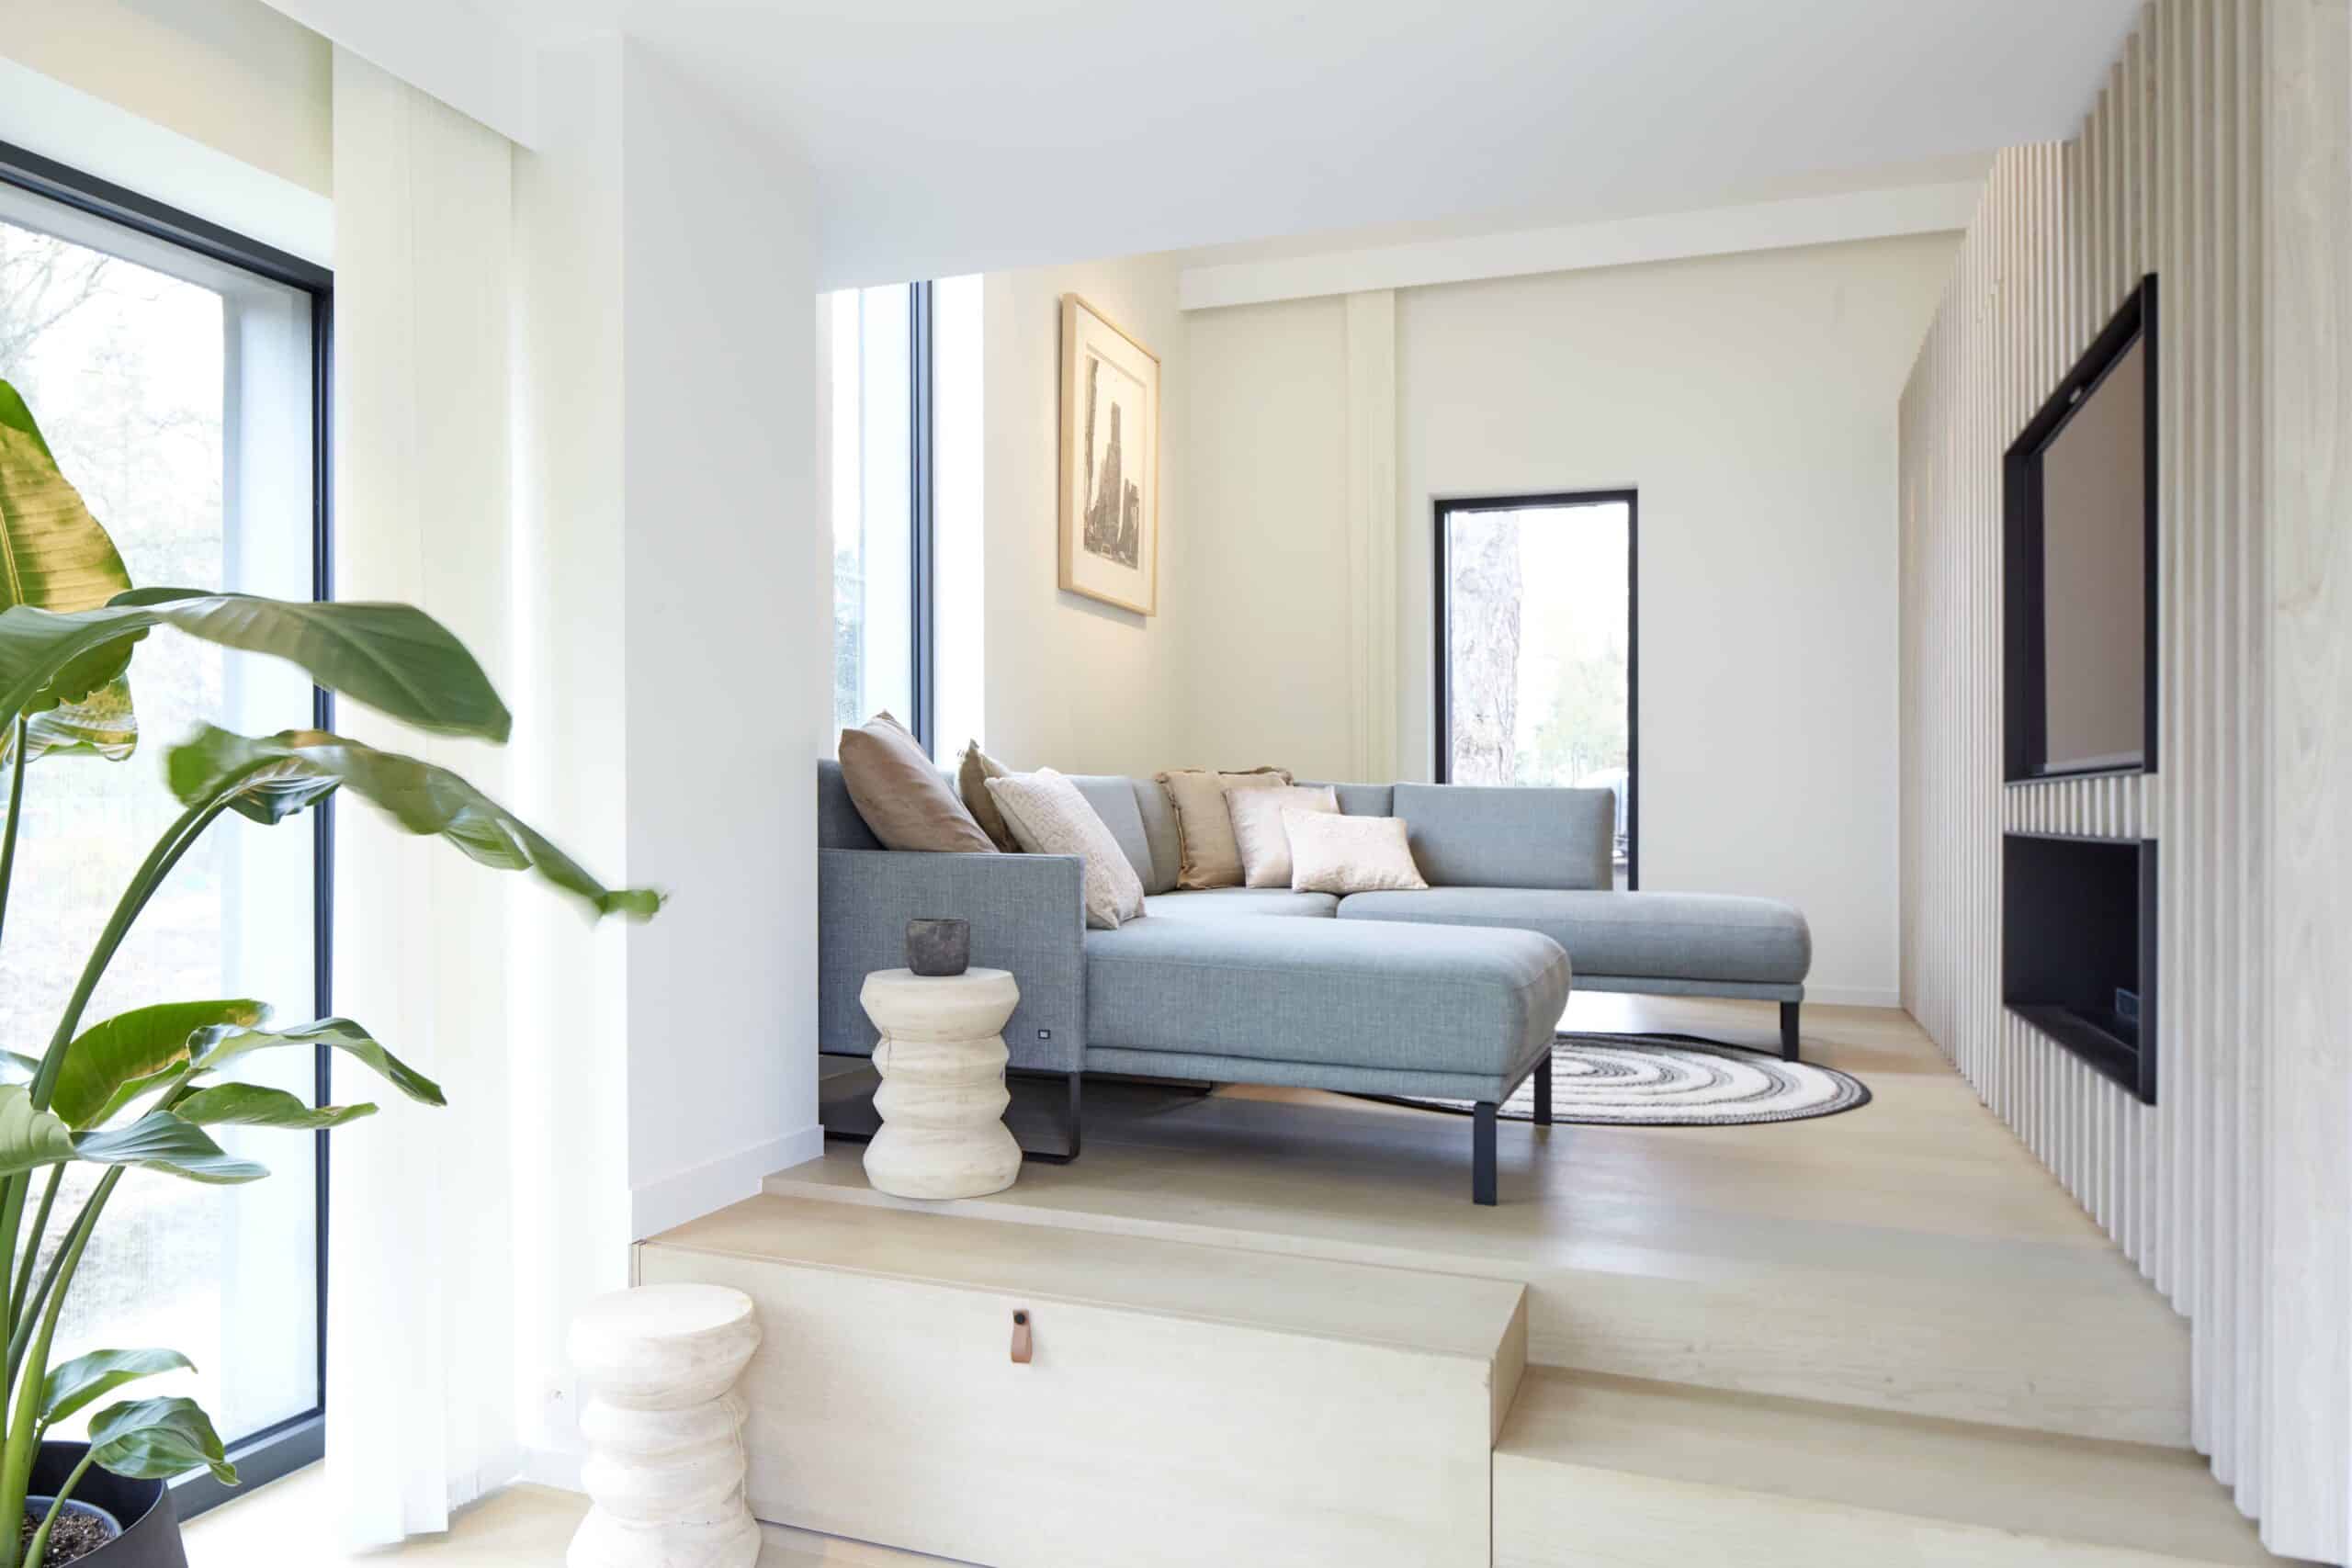 Een warme woonkamer doordrenkt met gevoel waar stijl en persoonlijkheid samenkomen in harmonie.